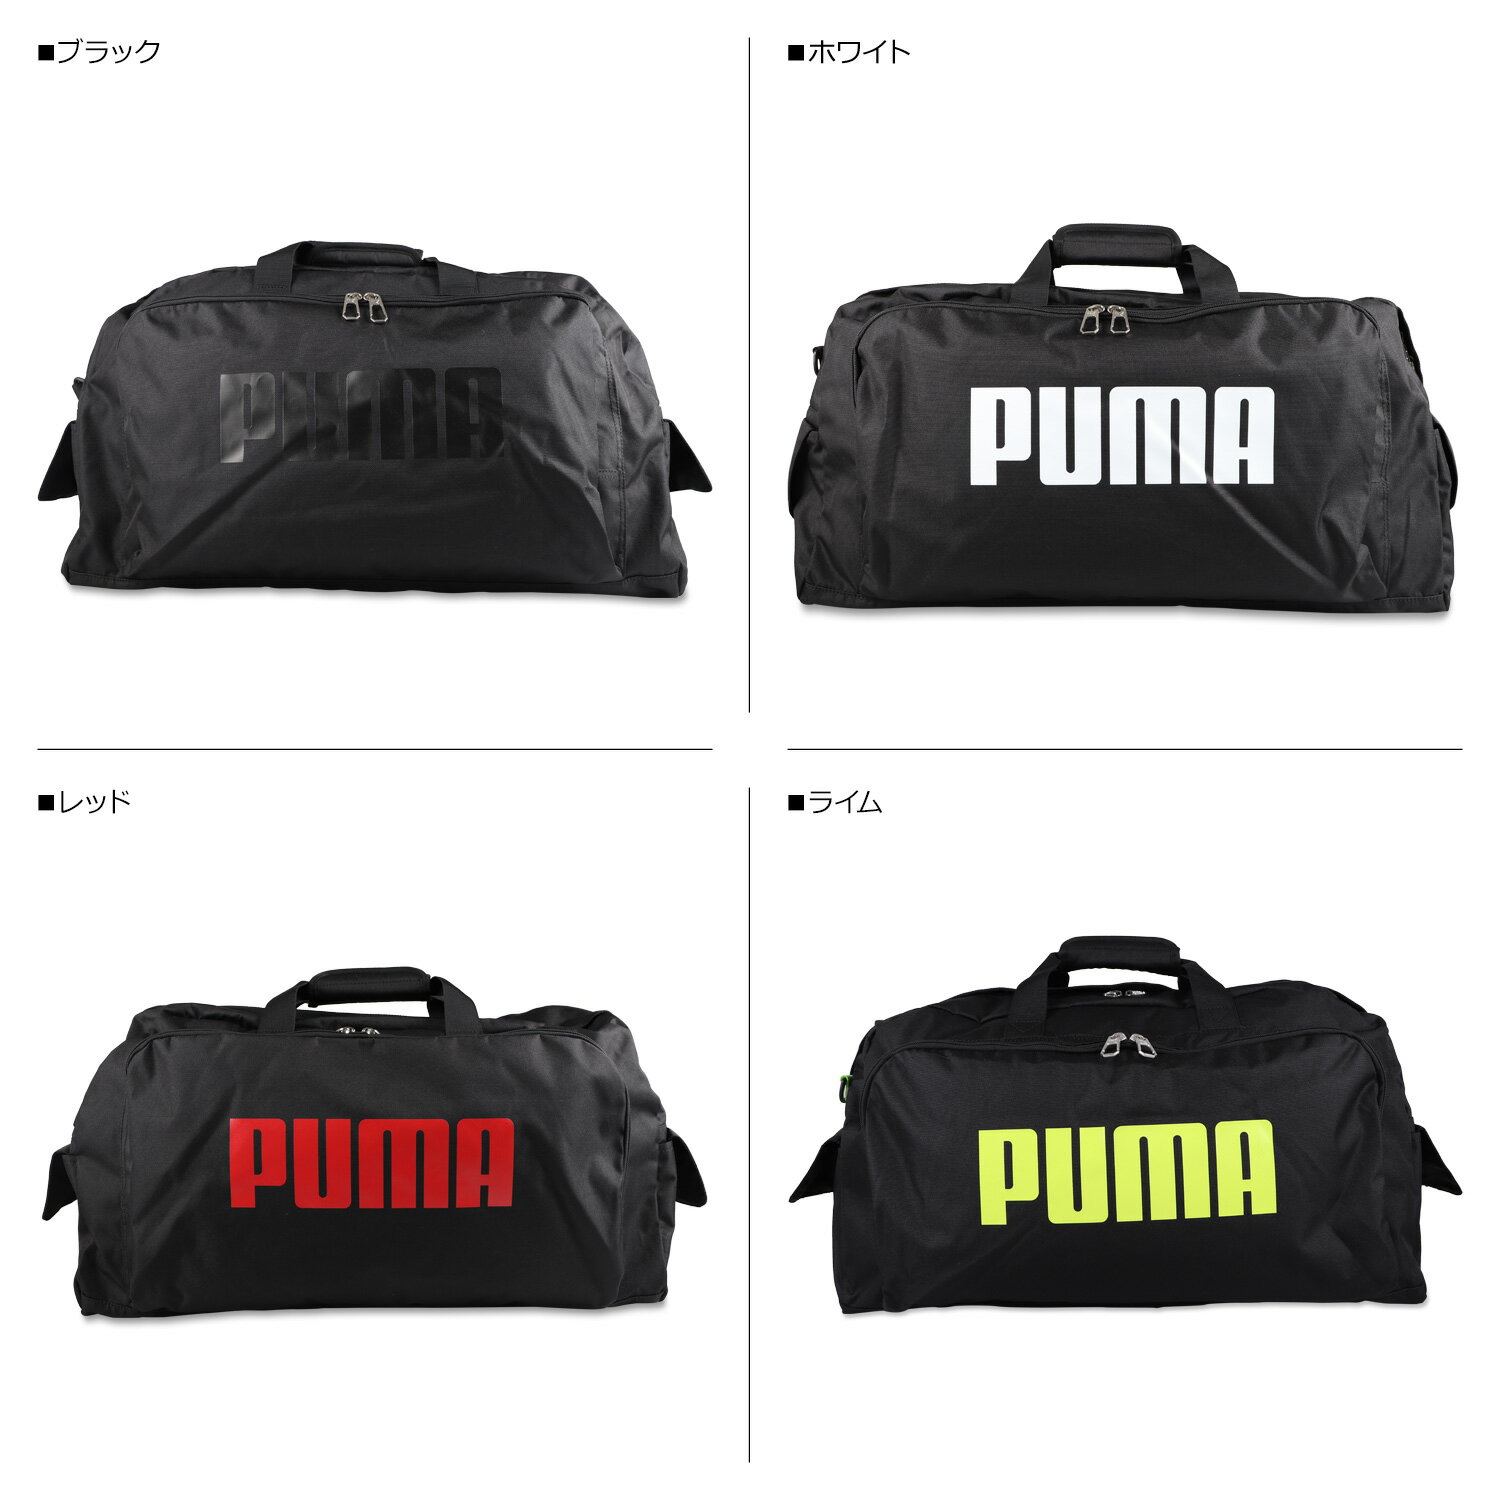 PUMA BOSTON BAG プーマ ボストンバッグ ショルダーバッグ メンズ レディース キッズ 50L 大容量 ブラック ホワイト レッド ライム 黒 白 J20129 [予約 9月上旬 入荷予定]